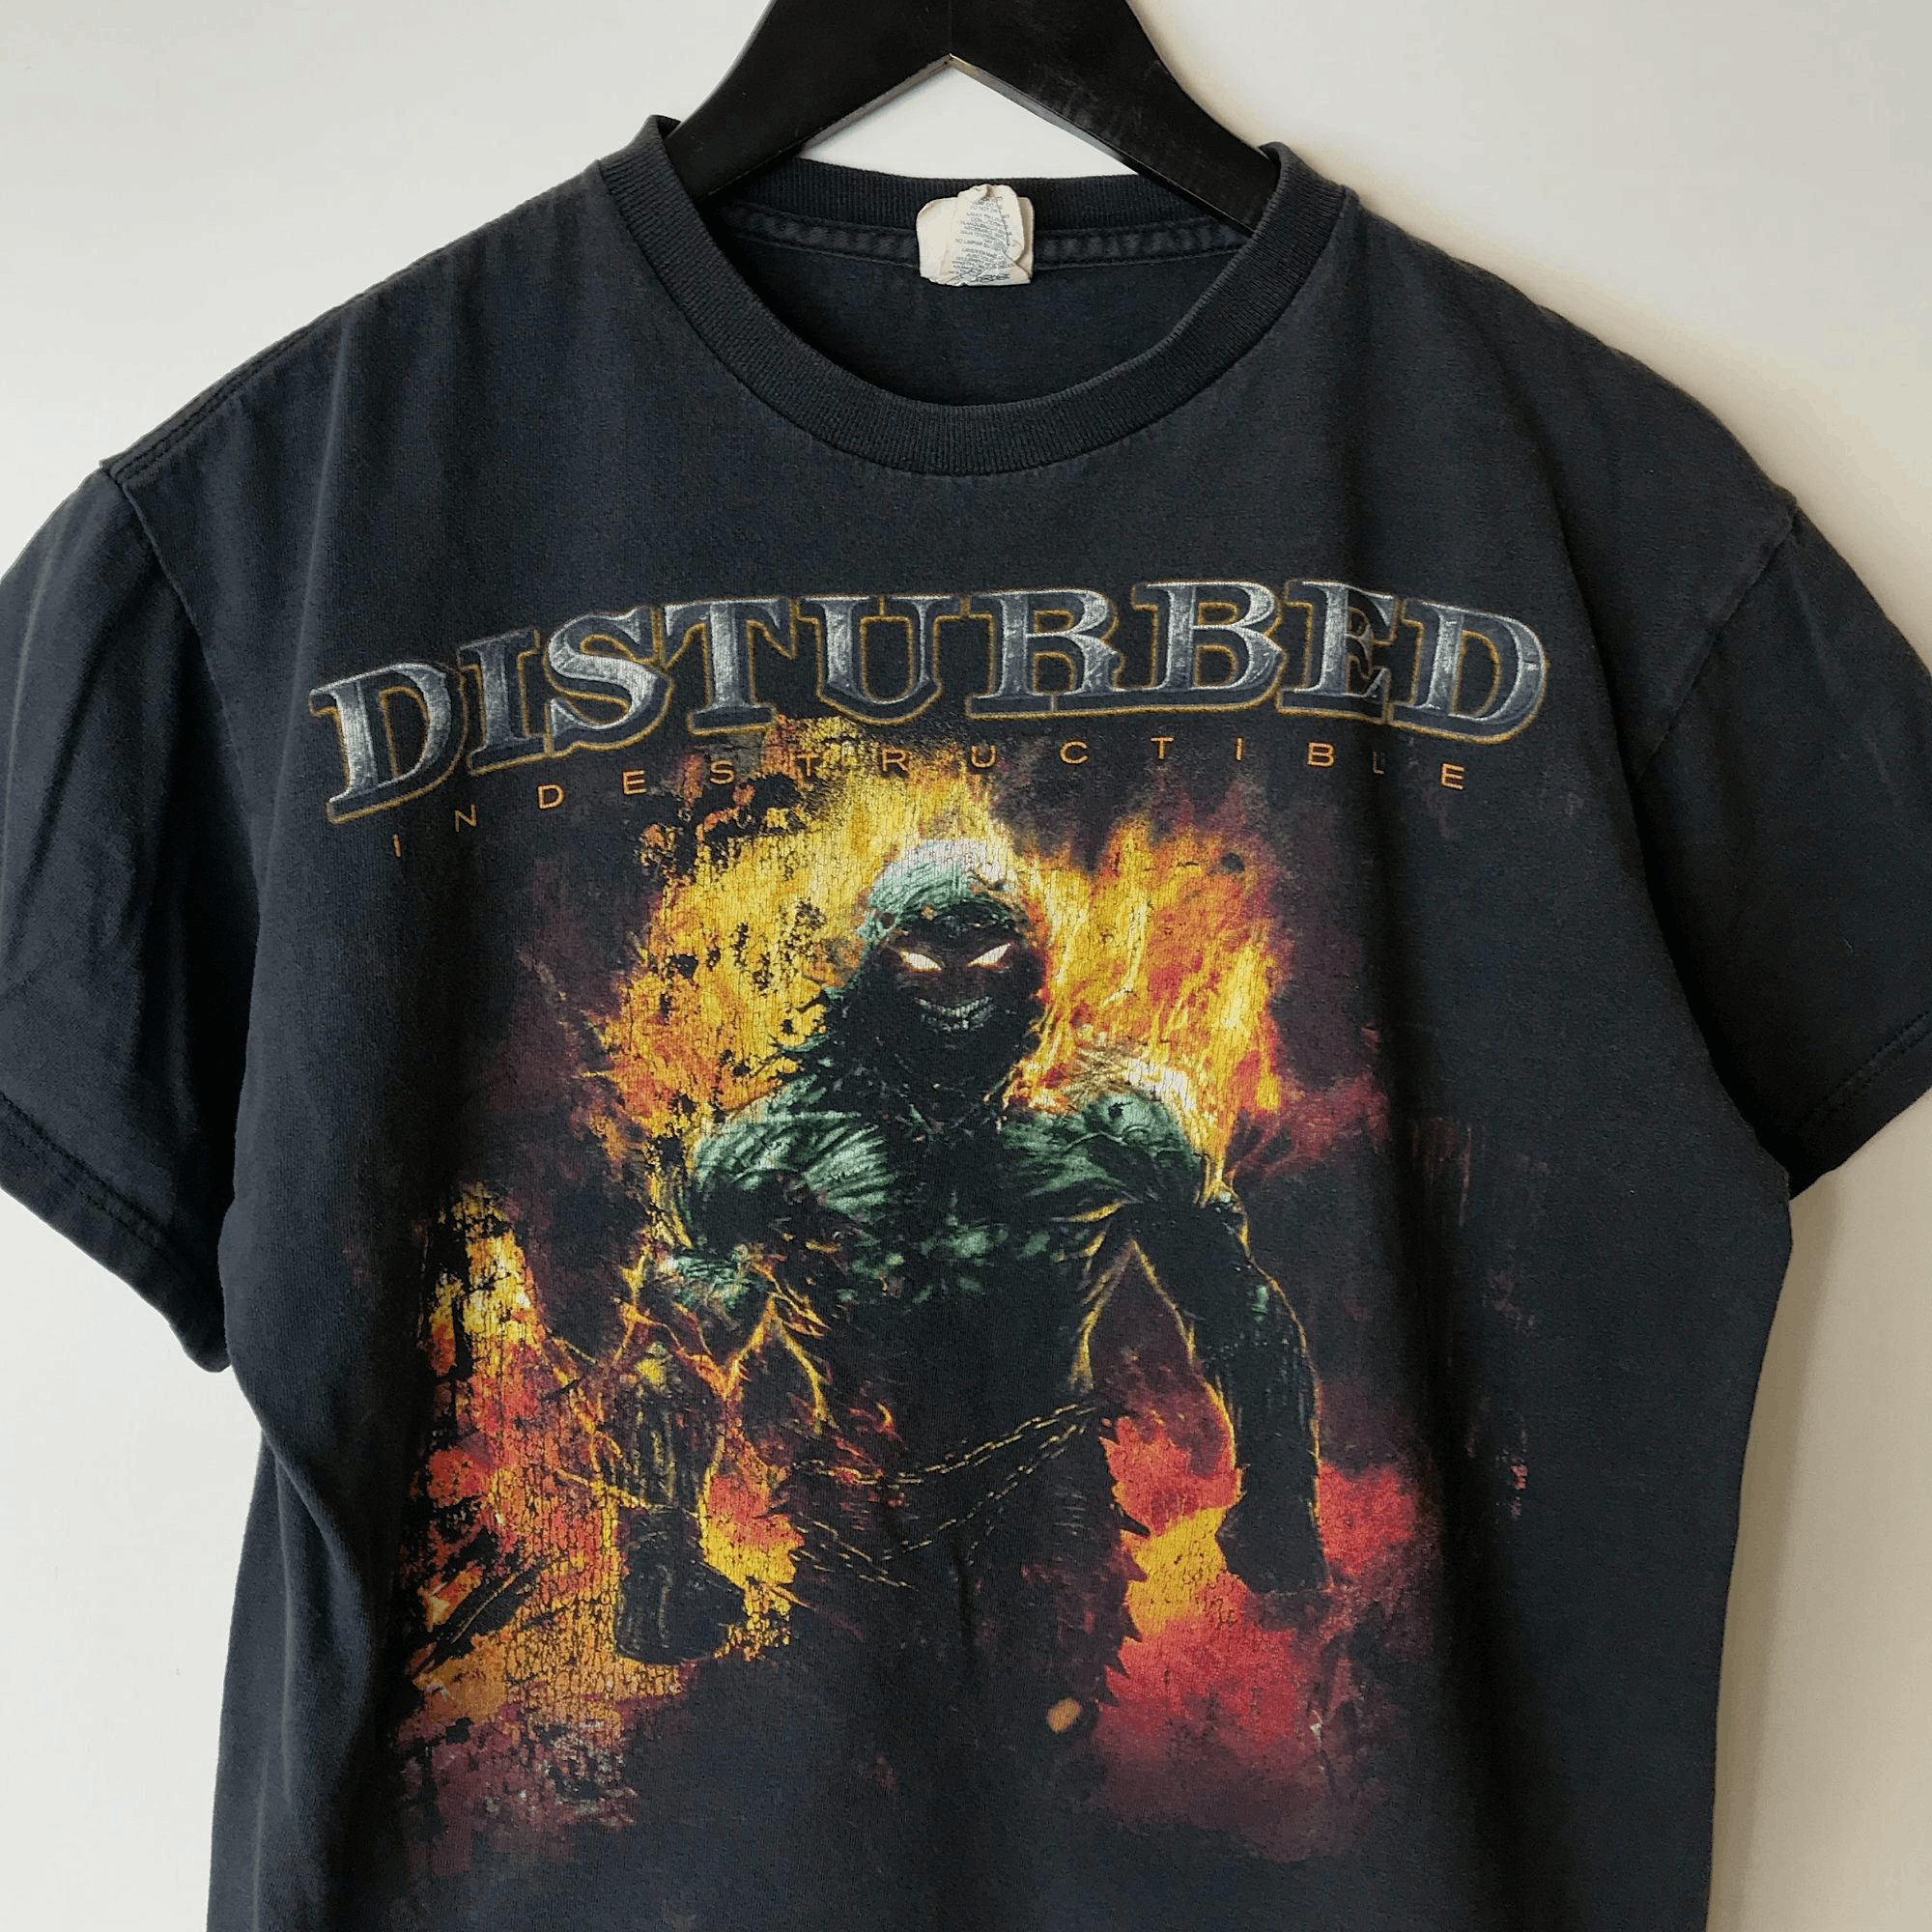 Delta 2009 Vintage Disturbed Indestructible Tour T Shirt 00s Adult Size US S / EU 44-46 / 1 - 11 Thumbnail